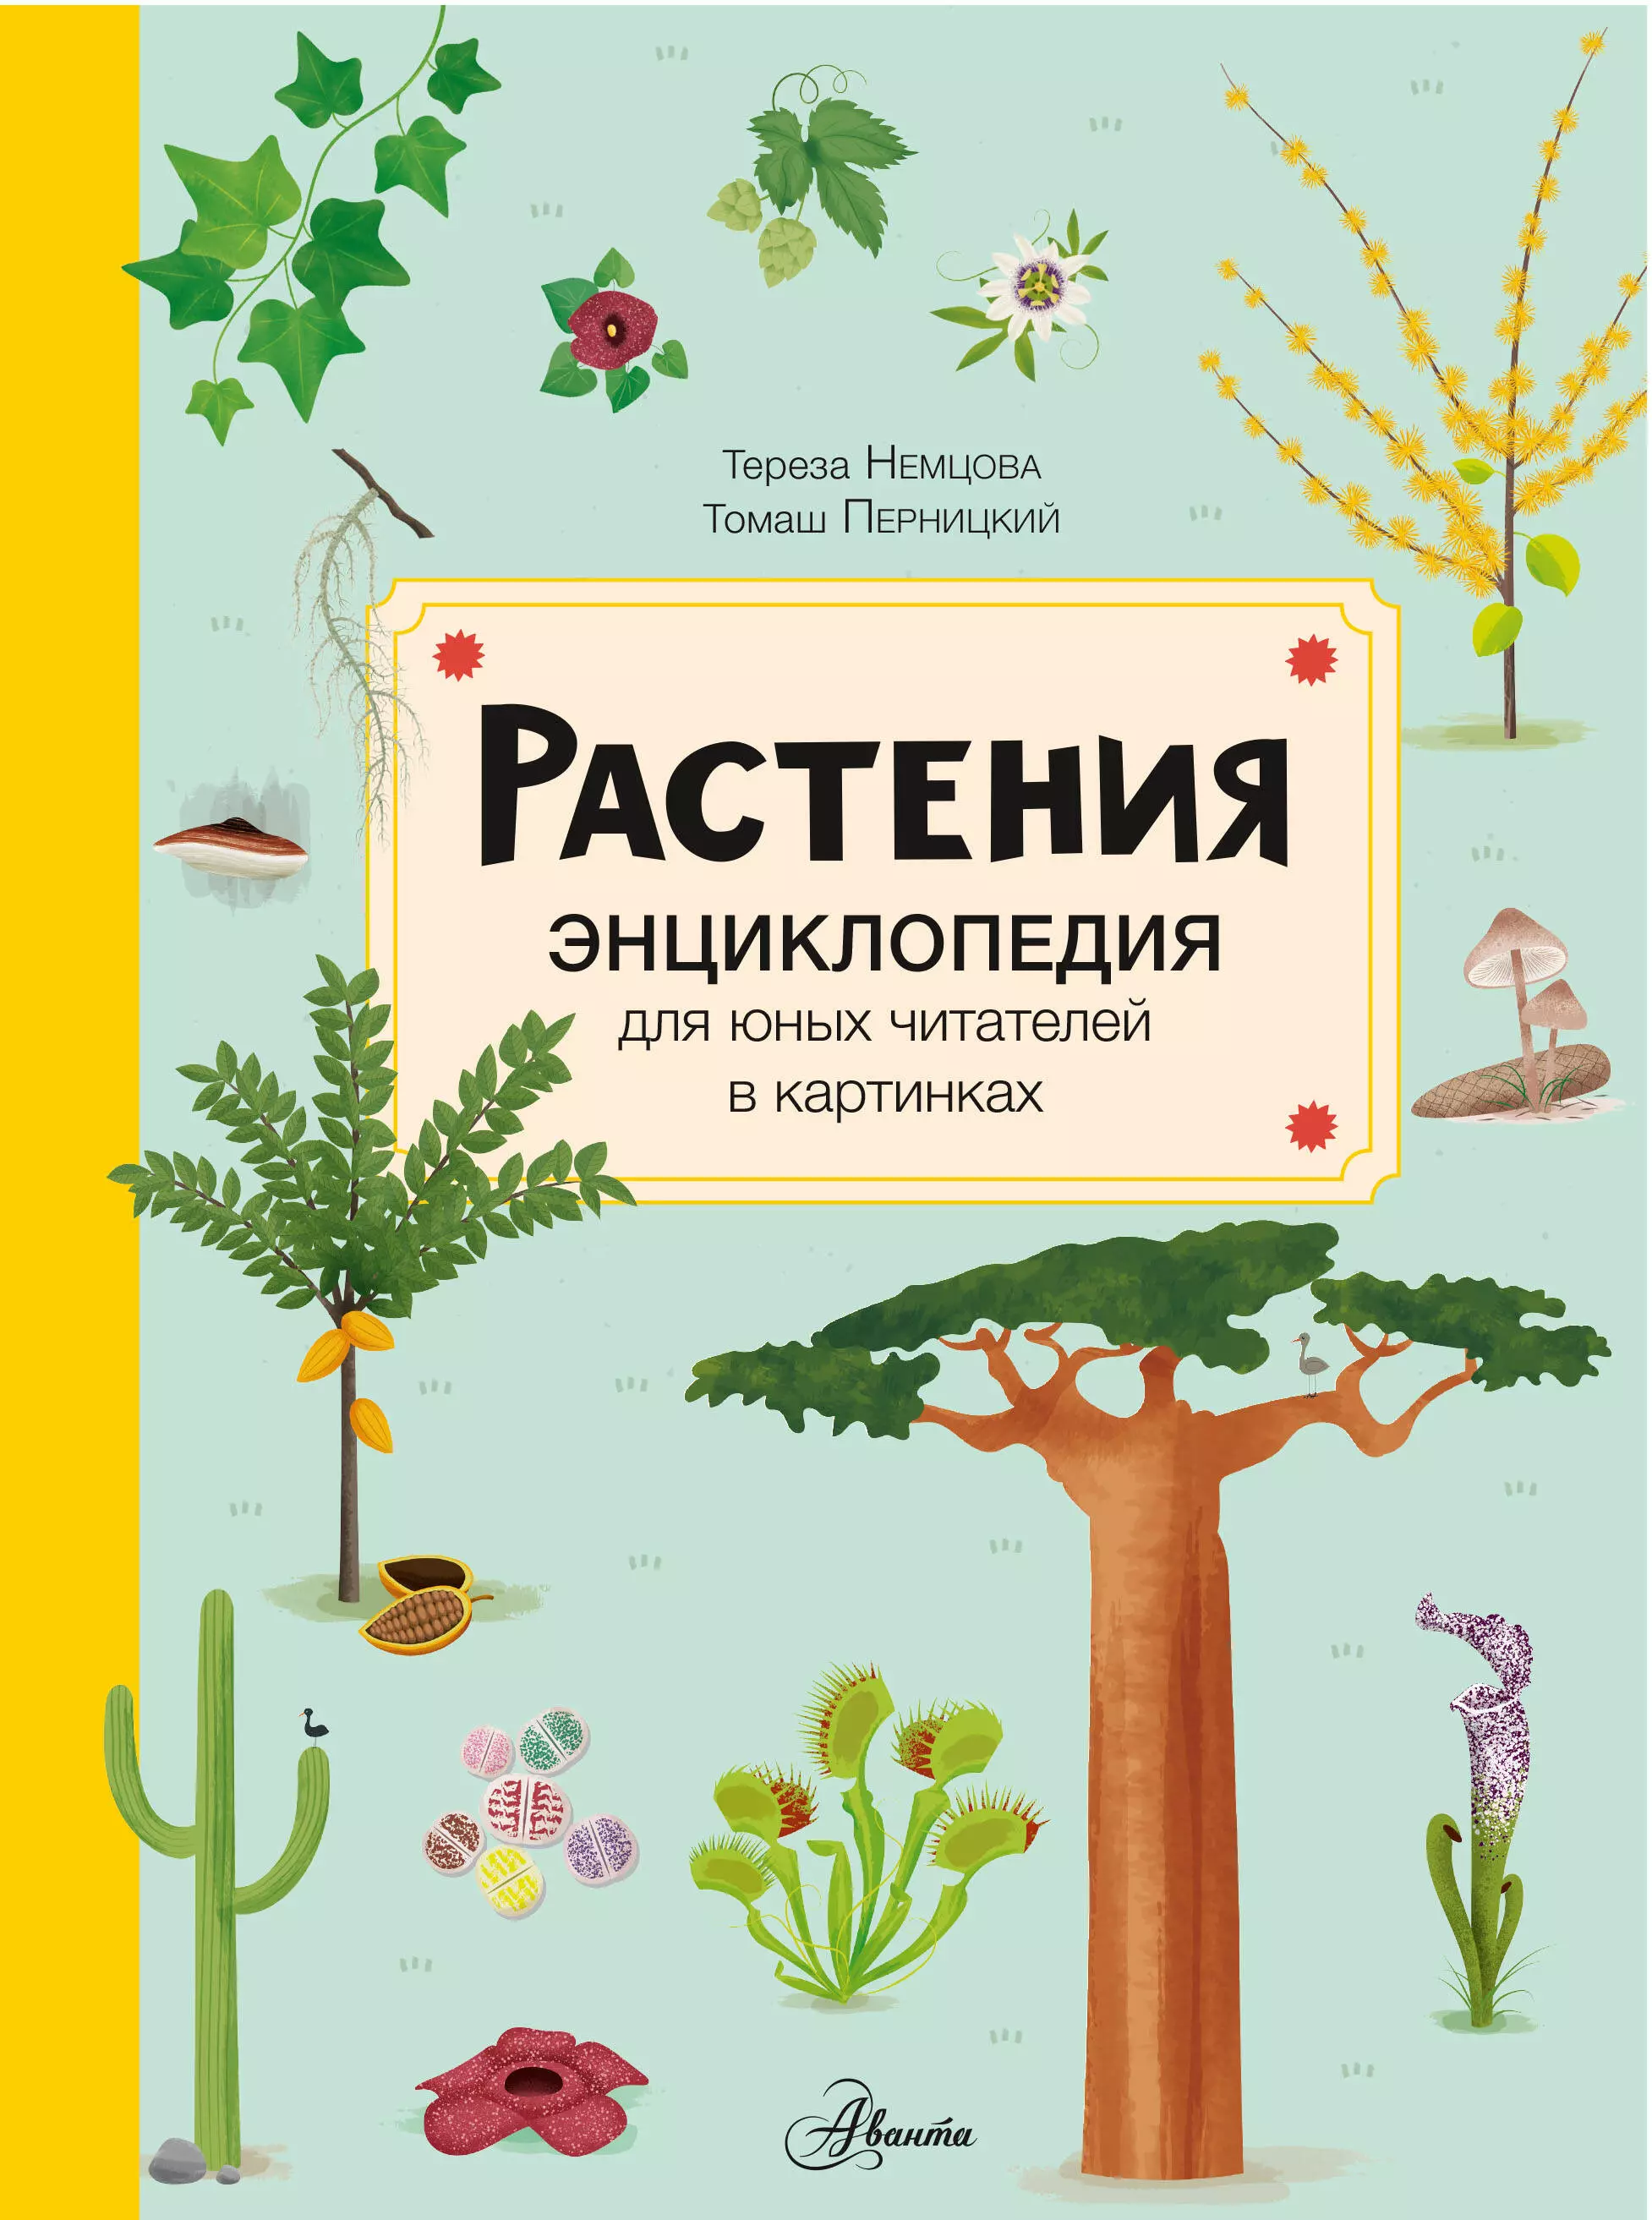 Немцова Тереза - Растения. Энциклопедия для юных читателей в картинках